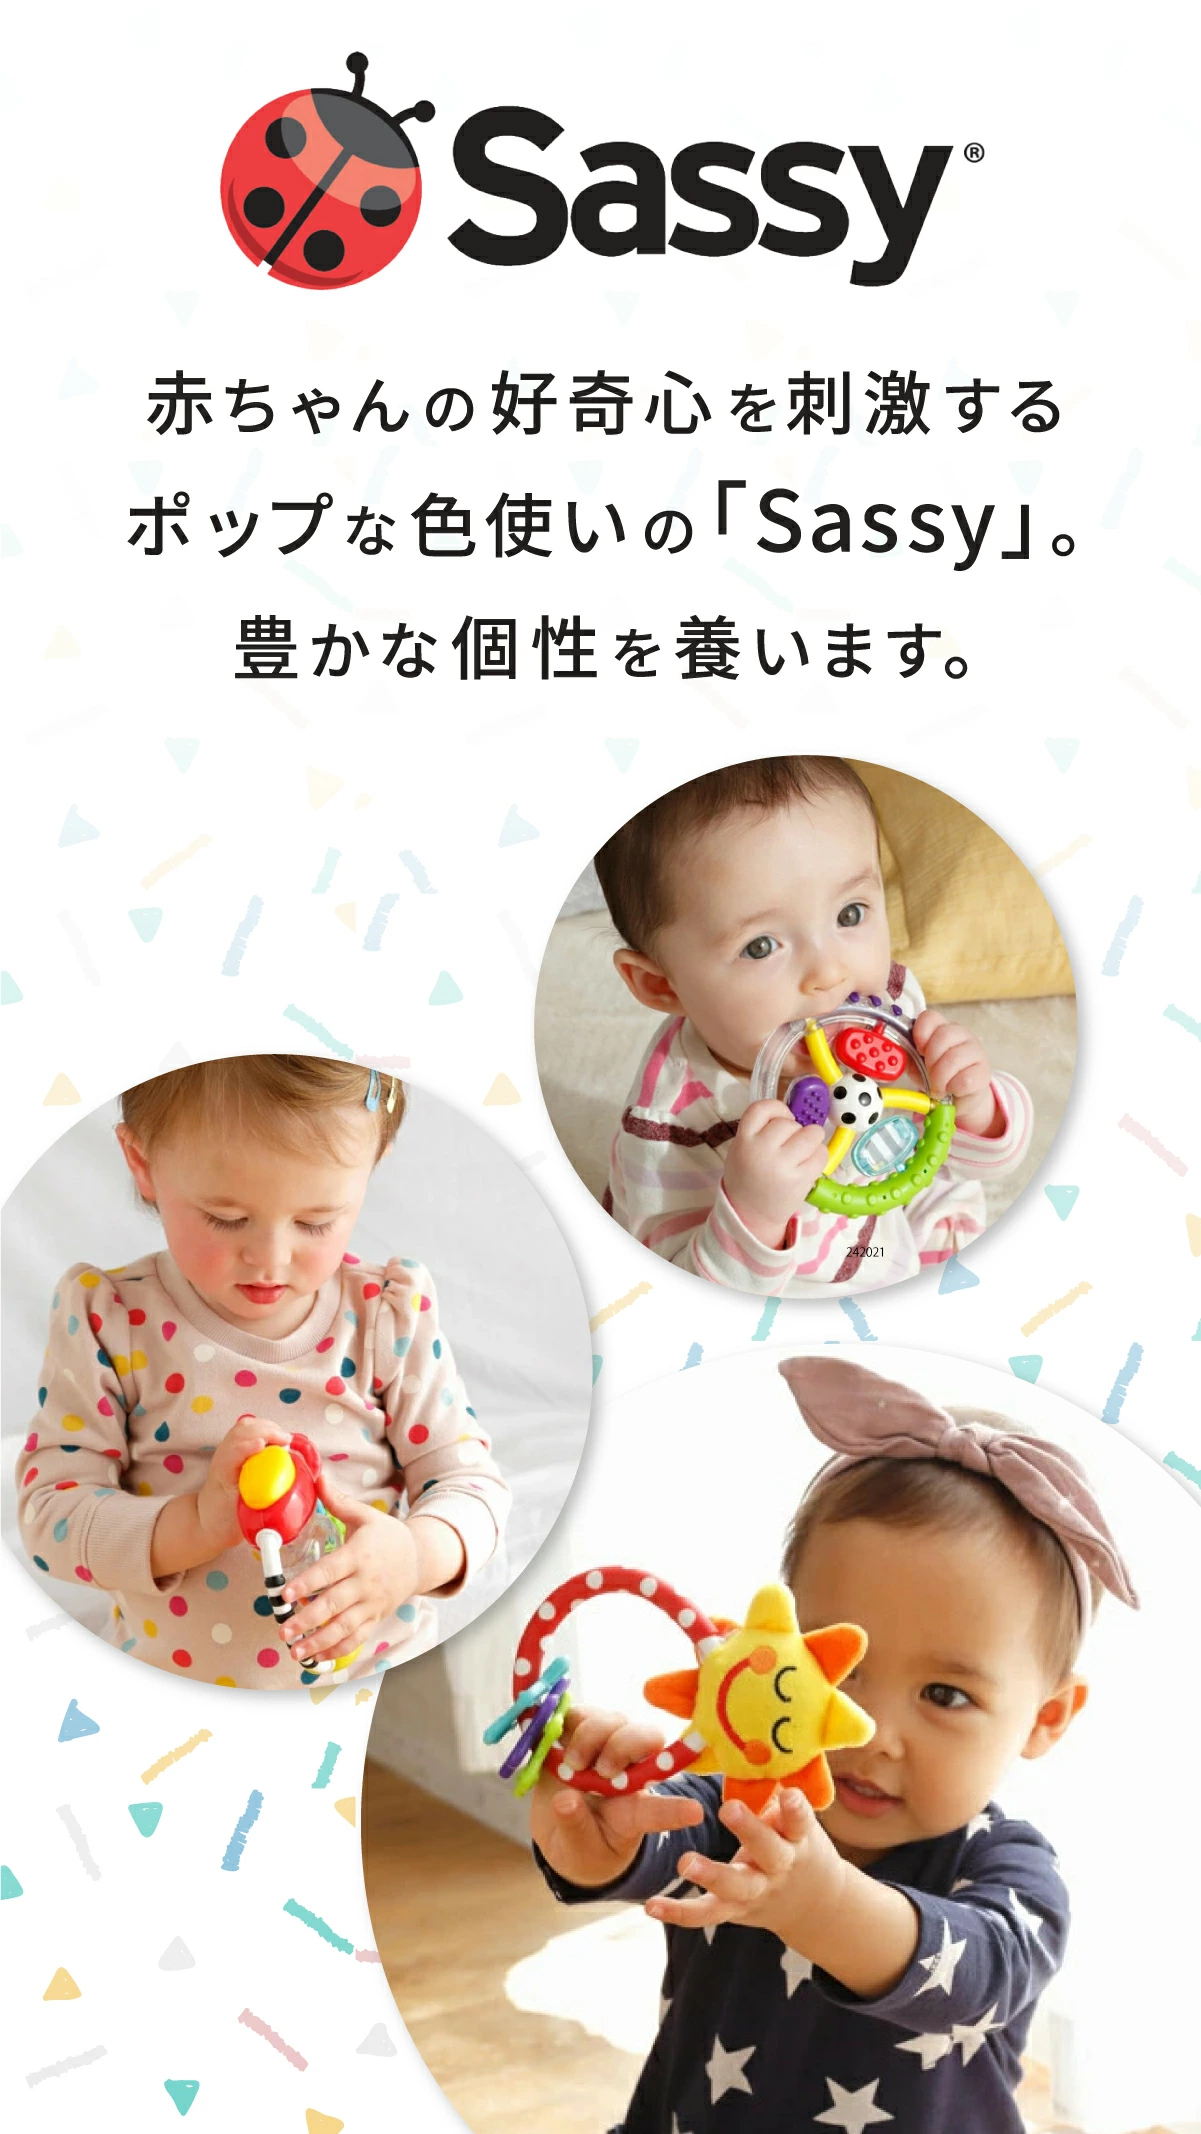 赤ちゃんの好奇心を刺激するポップな色使いの「Sassy」。豊かな個性を養います。